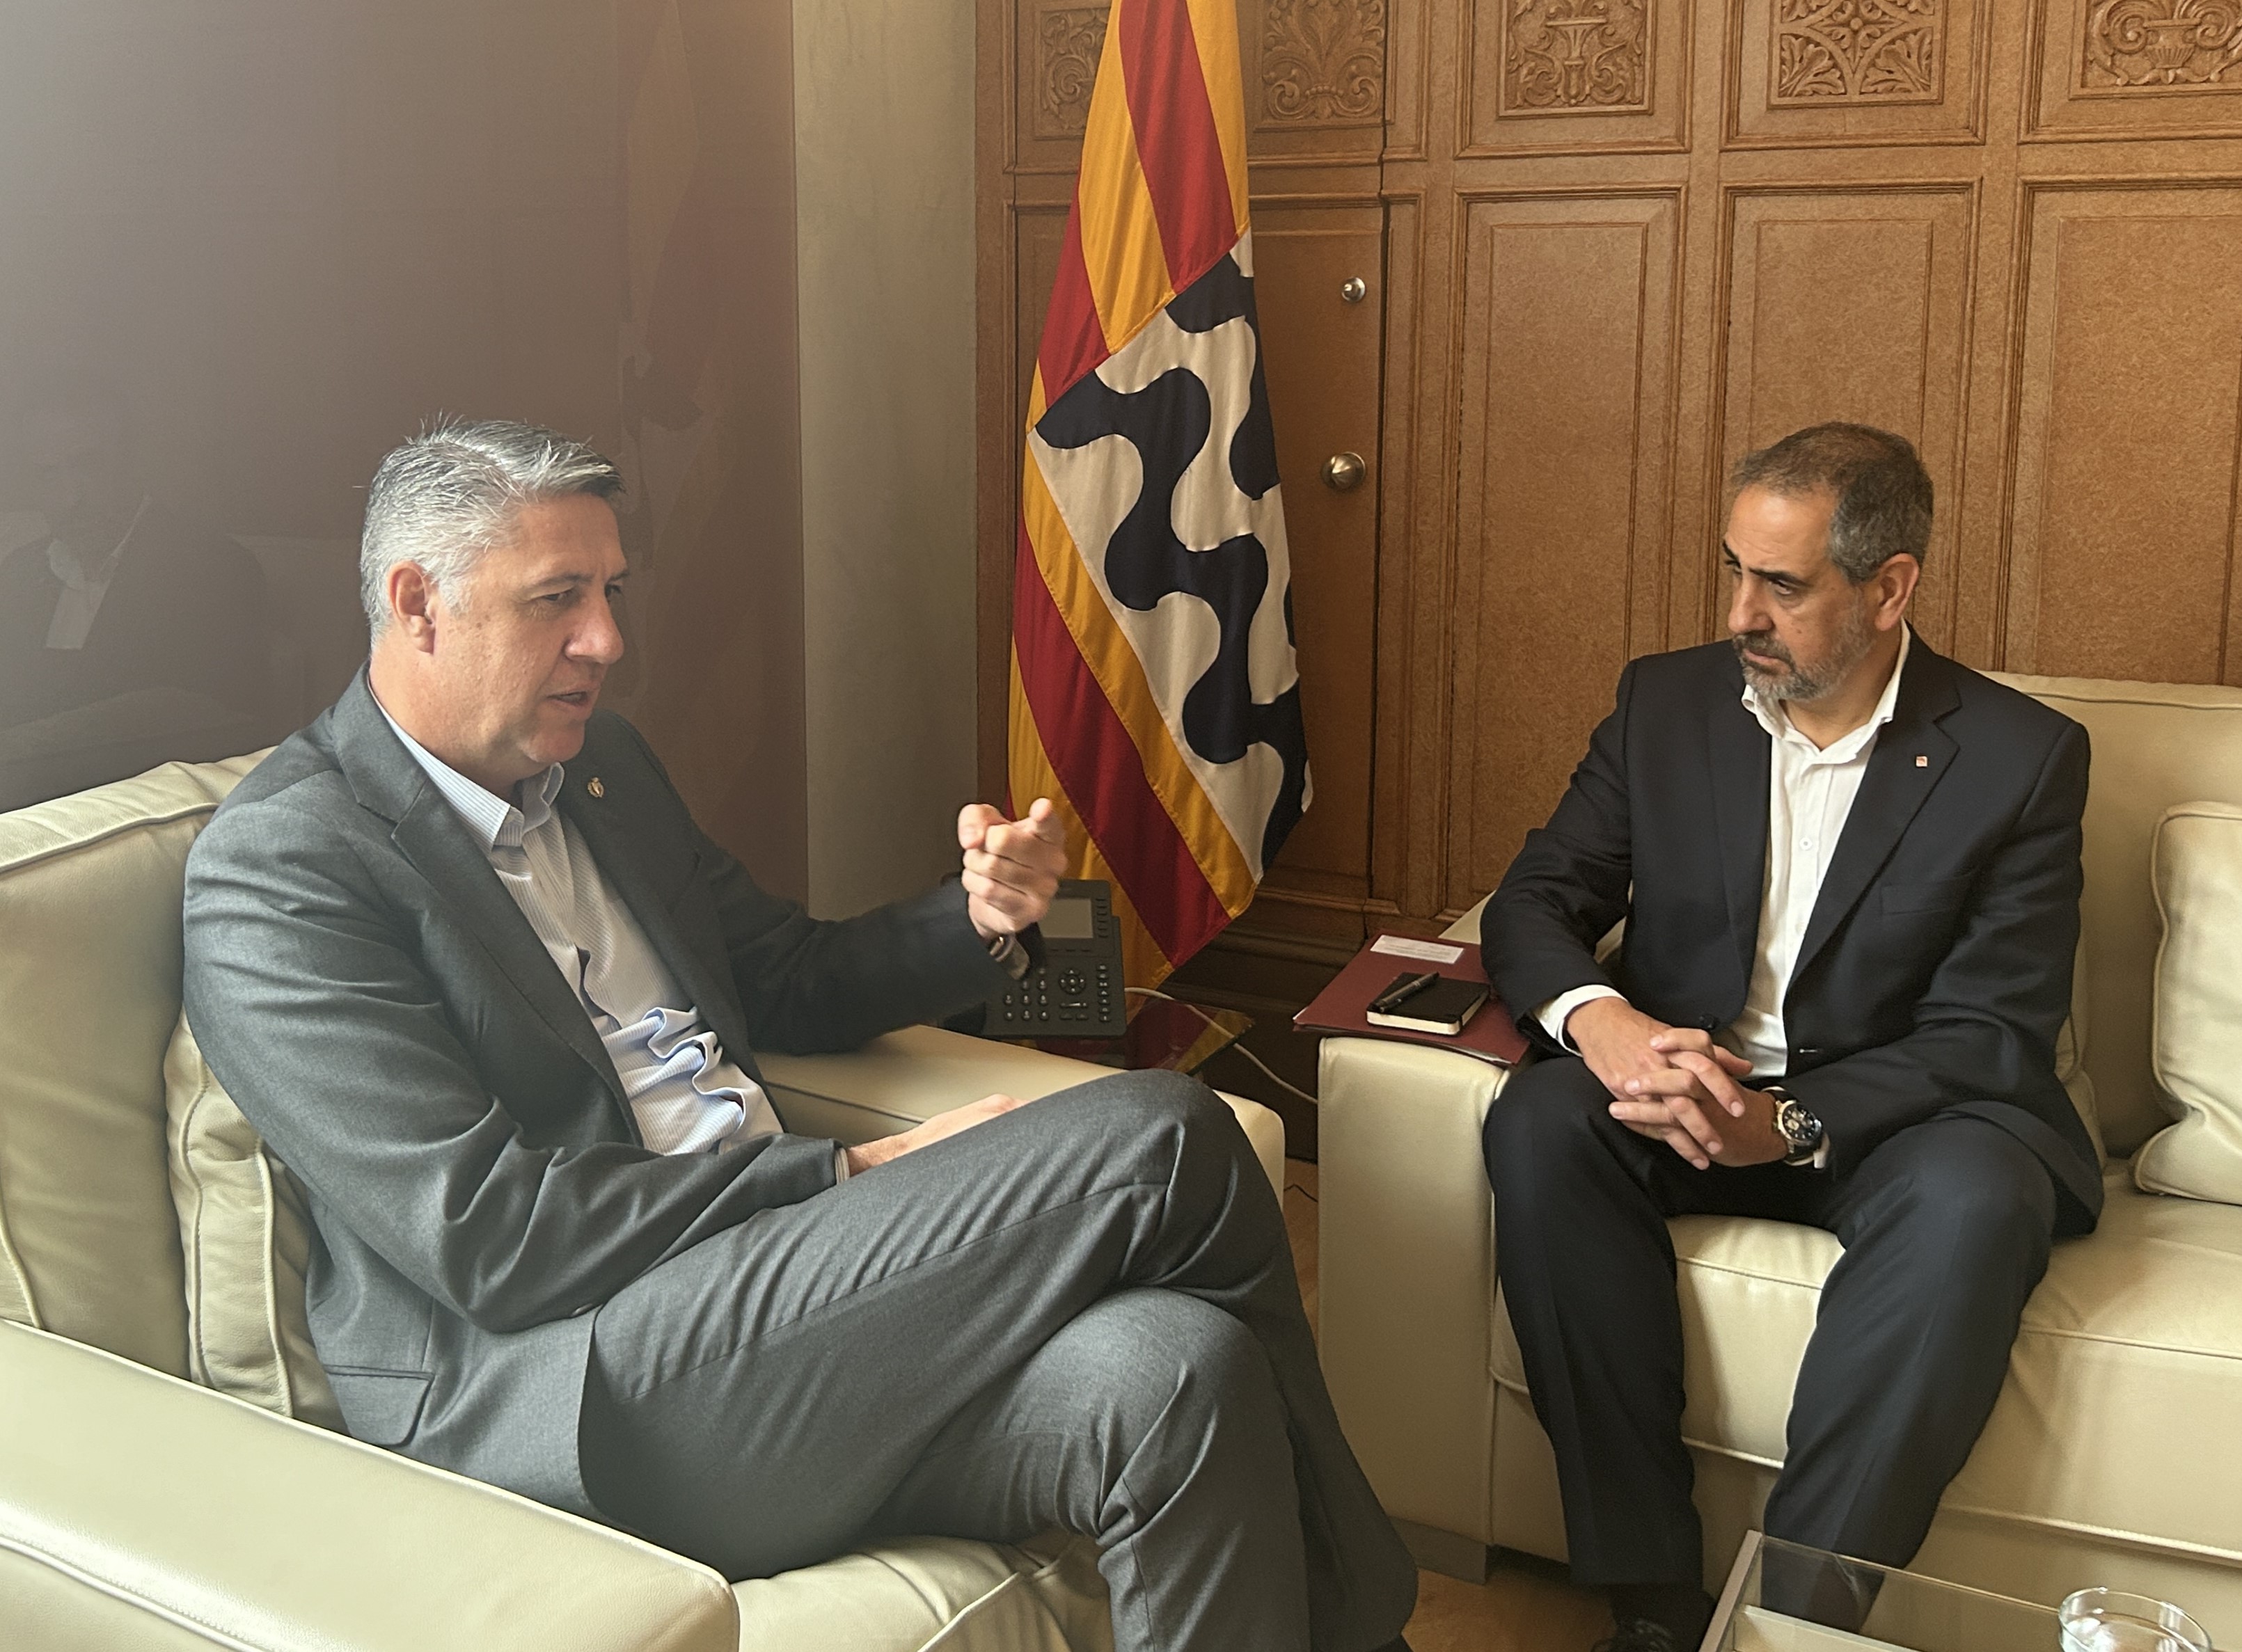 El delegat Joan Borràs es reuneix amb l'alcalde de Badalona, Xavier García Albiol